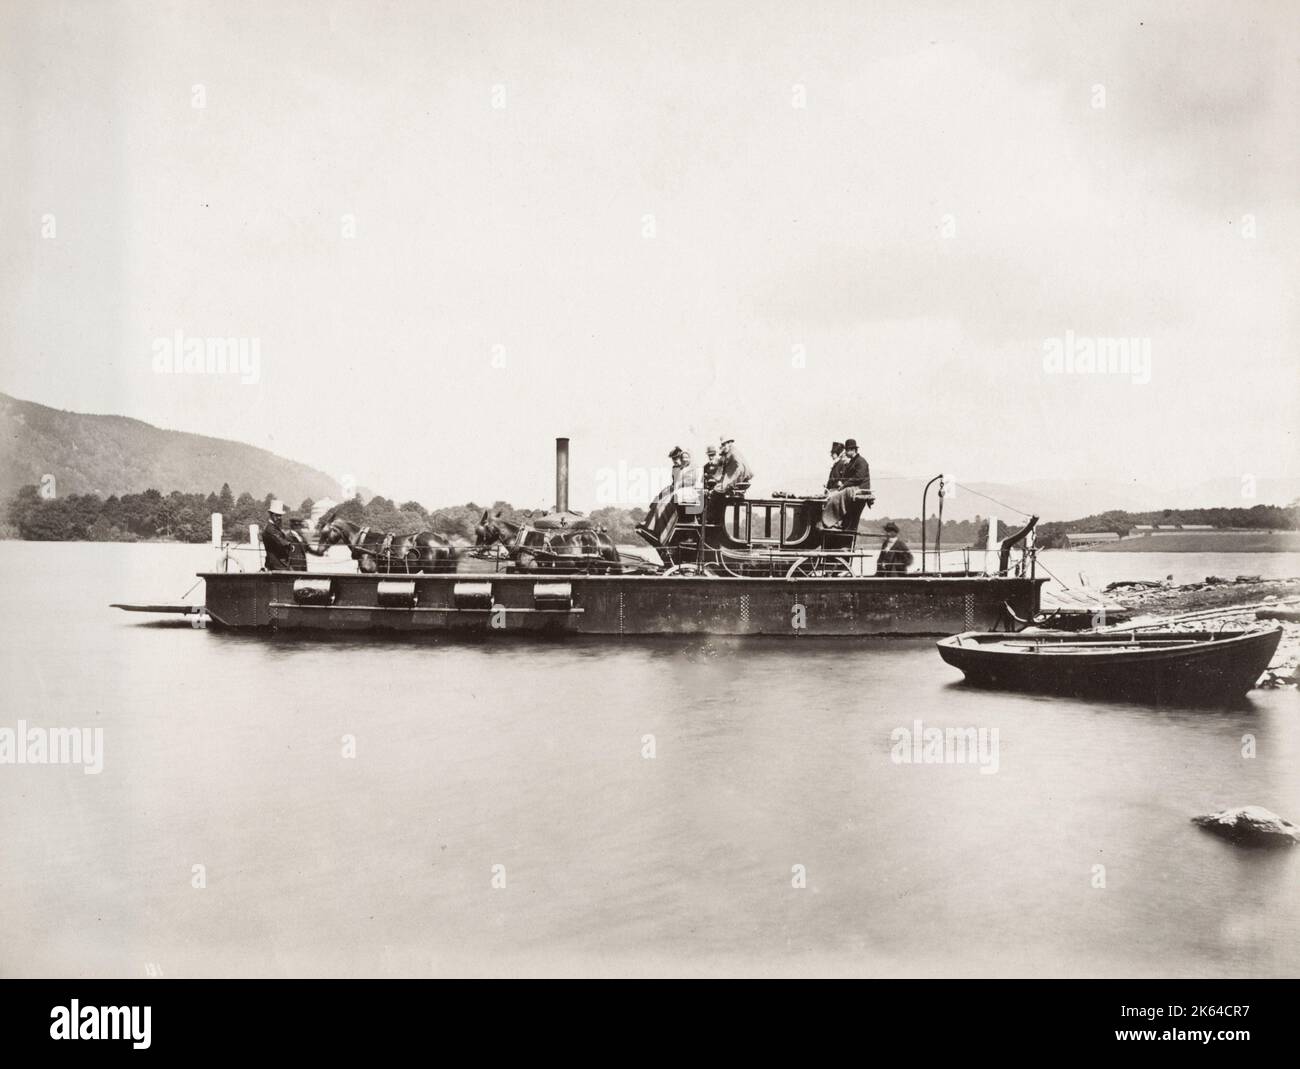 Photographie du XIXe siècle : cheval et calèche sur un traversier à vapeur, probablement photographié sur un lac anglais, vers 1880. Banque D'Images